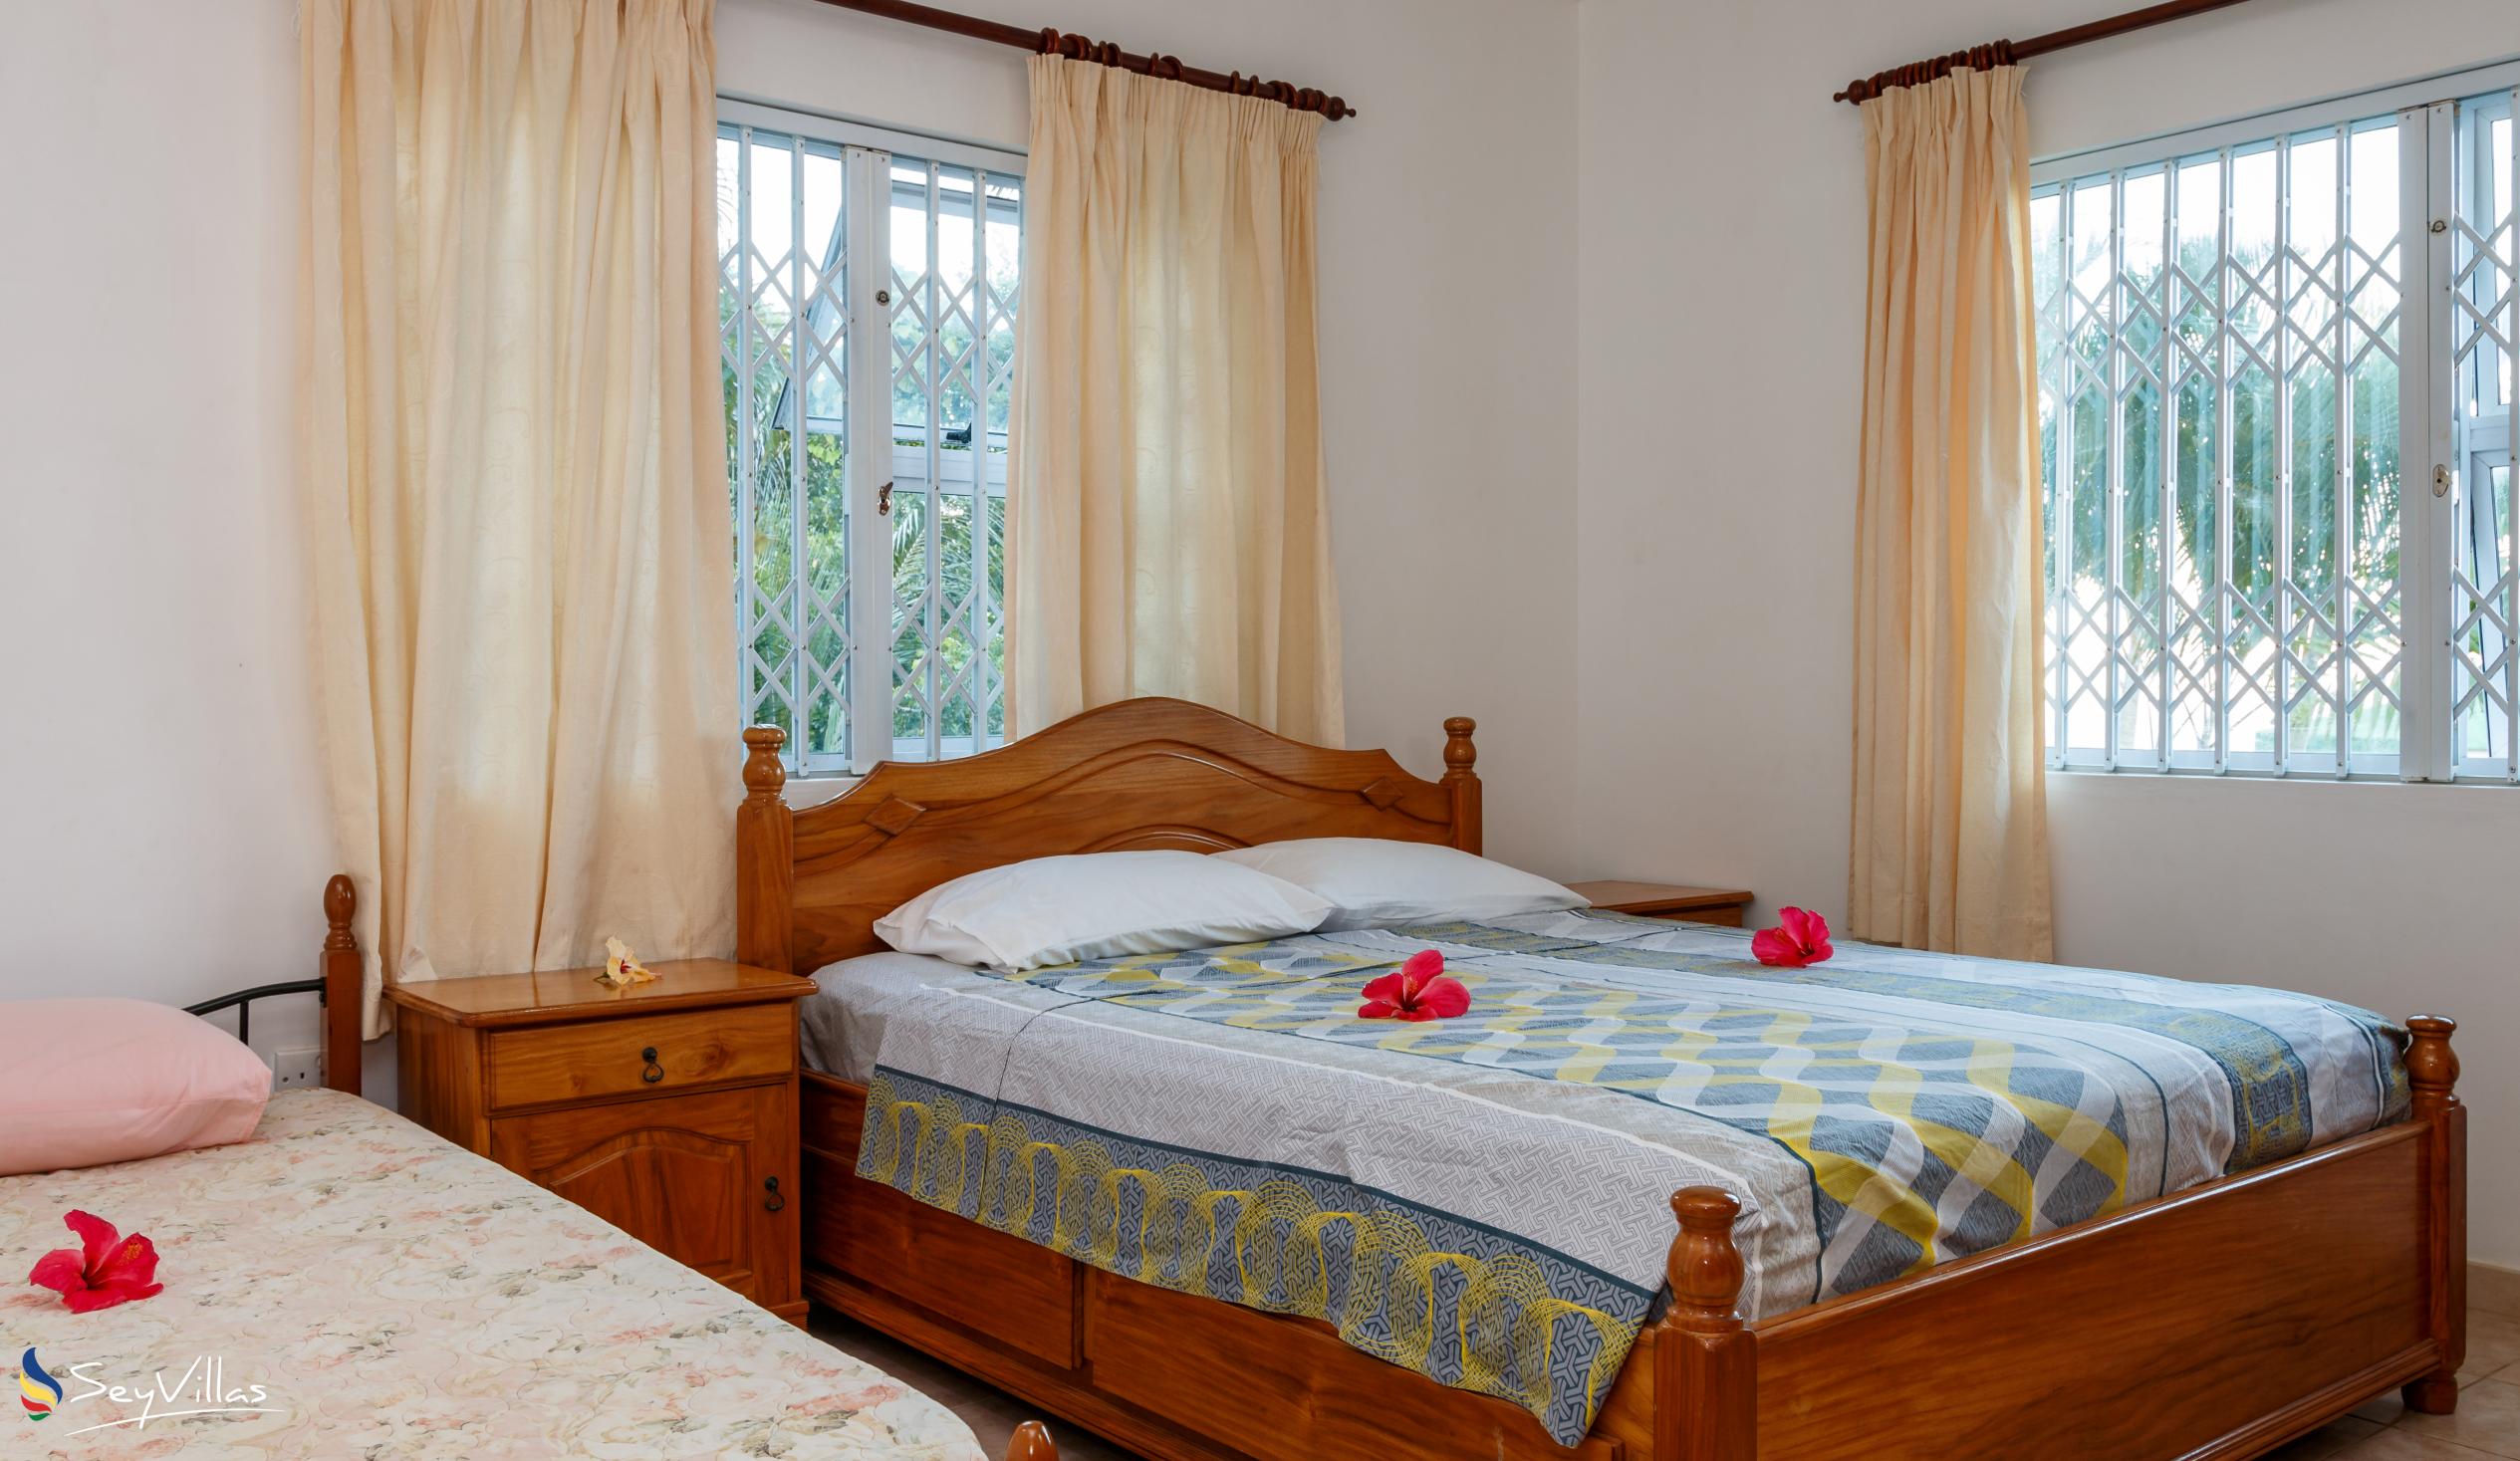 Foto 55: Villa Bel Age - Grand appartement - Mahé (Seychelles)